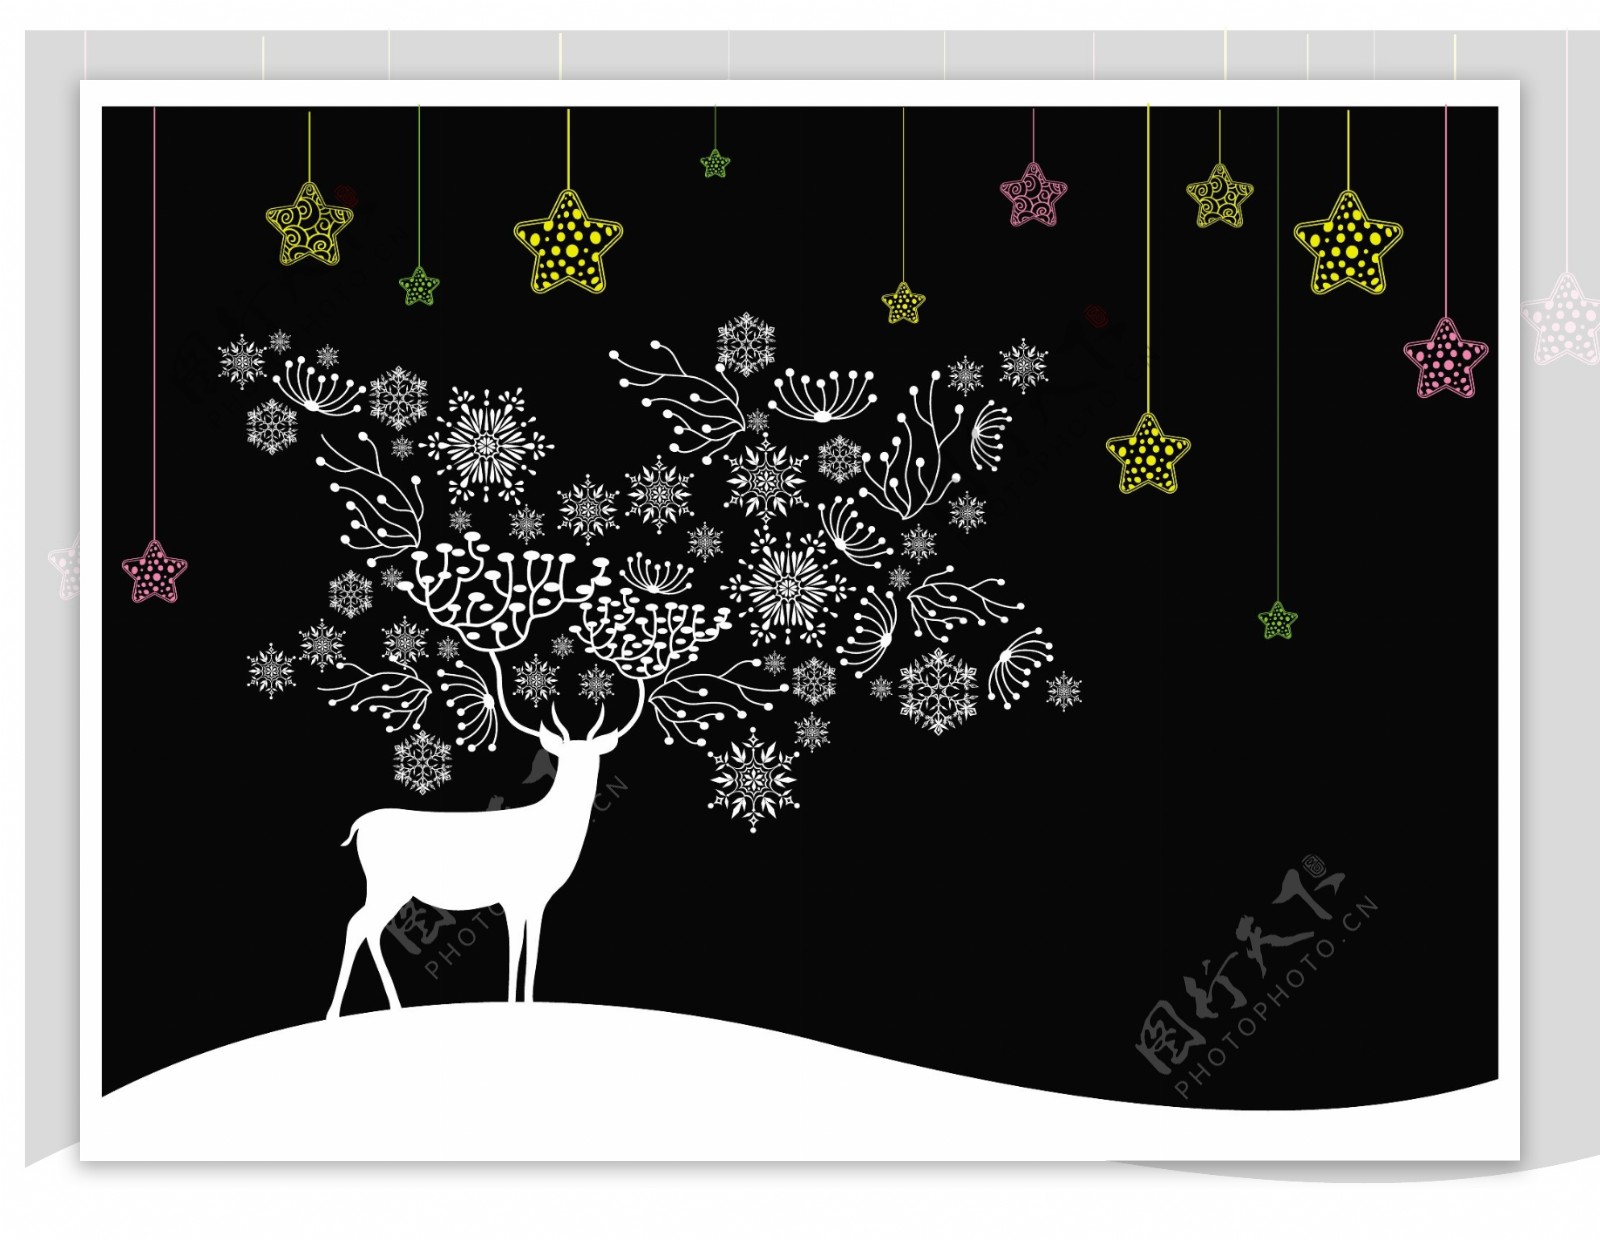 黑色背景白色圣诞节鹿和彩色星星自由向量